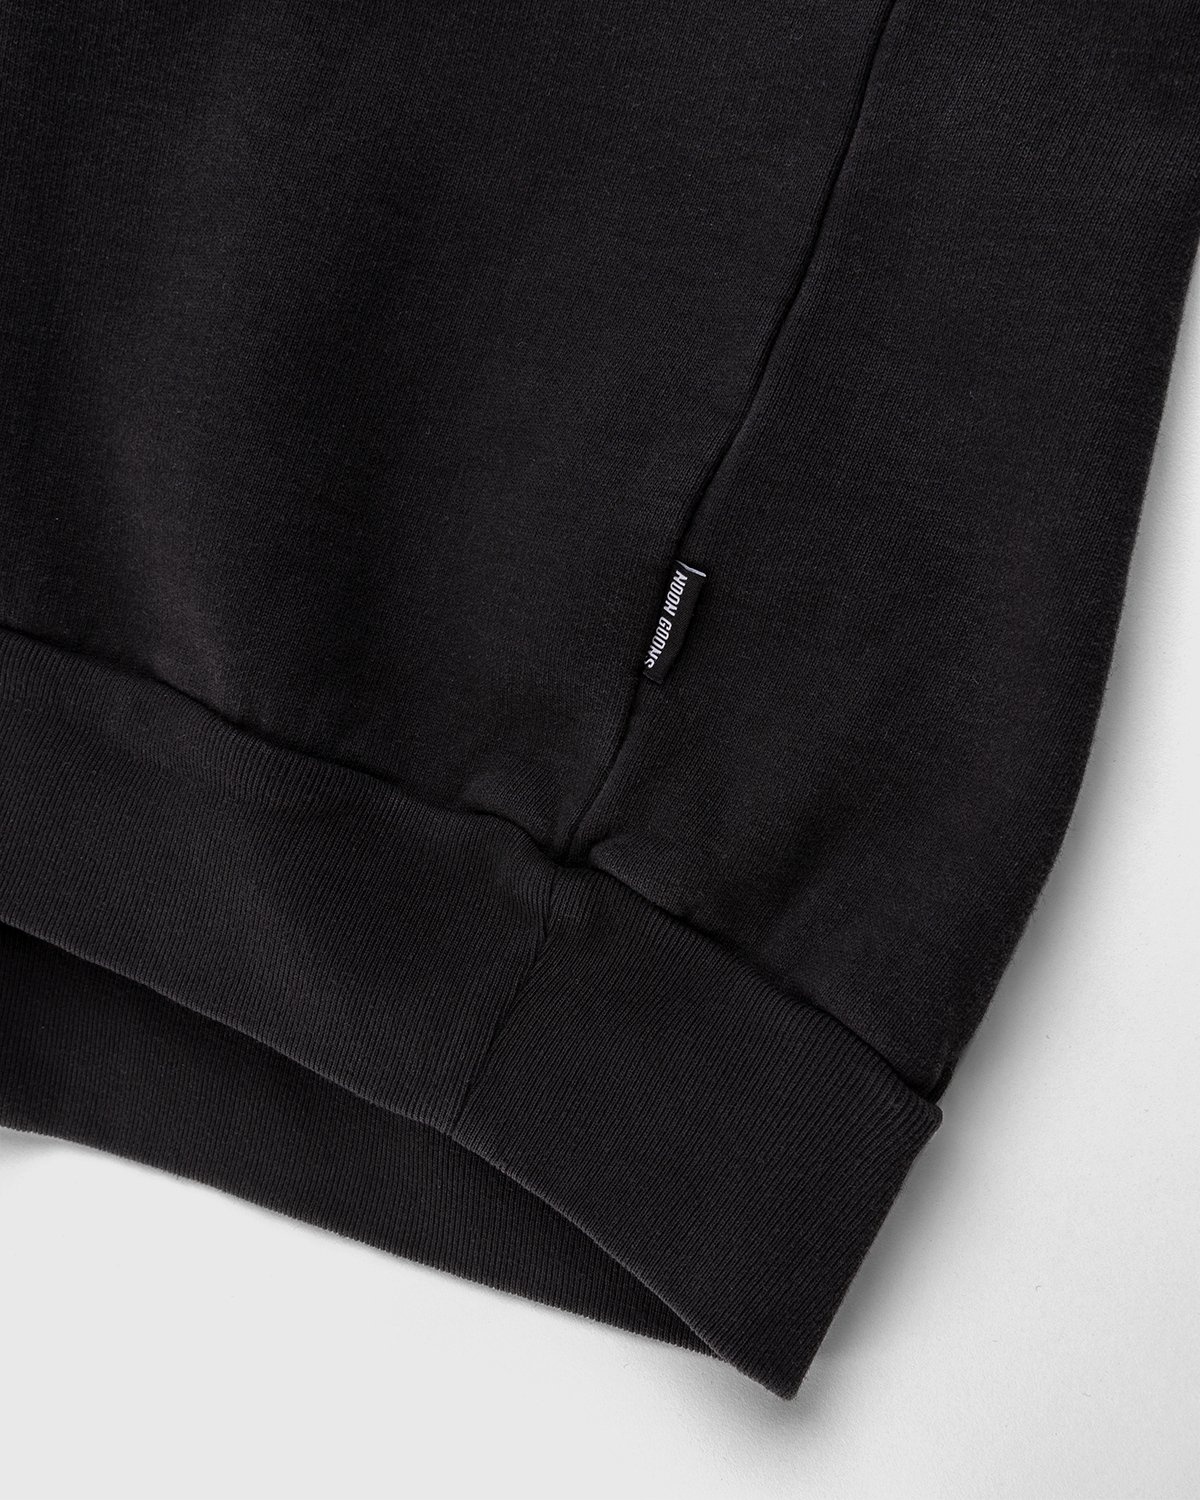 Noon Goons – Garden Sweatshirt Black - Sweats - Black - Image 4